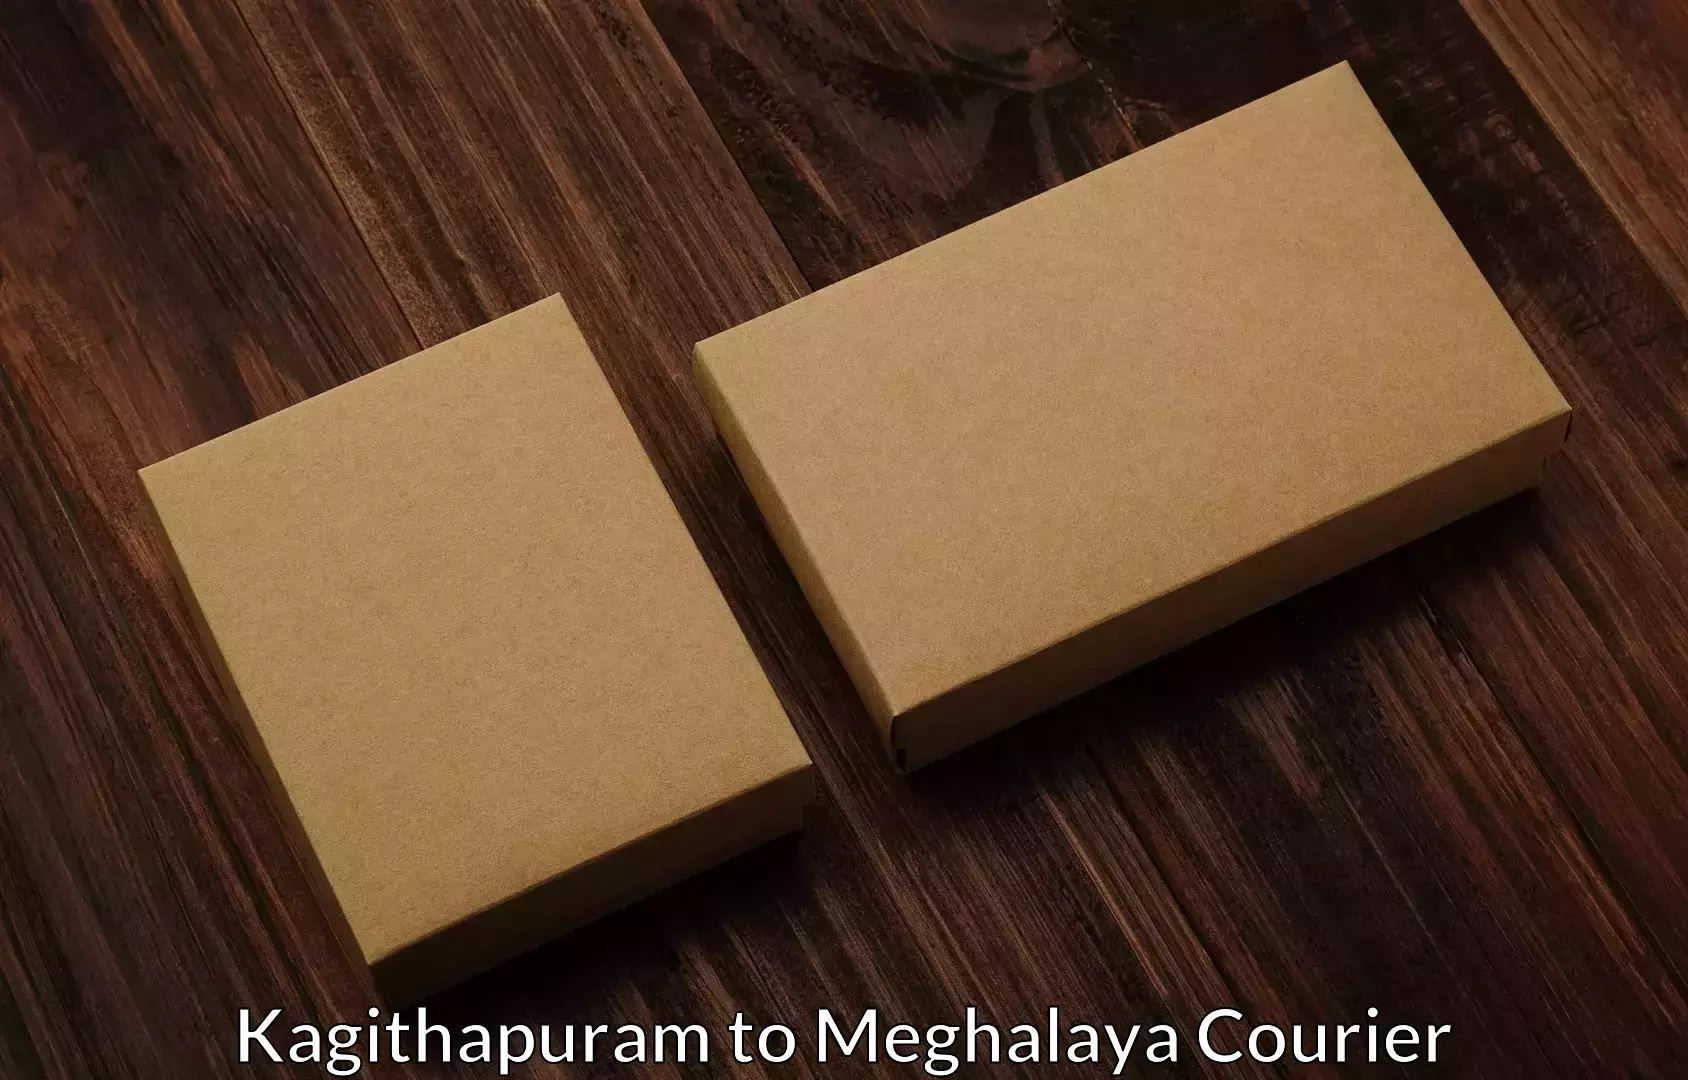 Furniture transport experts Kagithapuram to Meghalaya